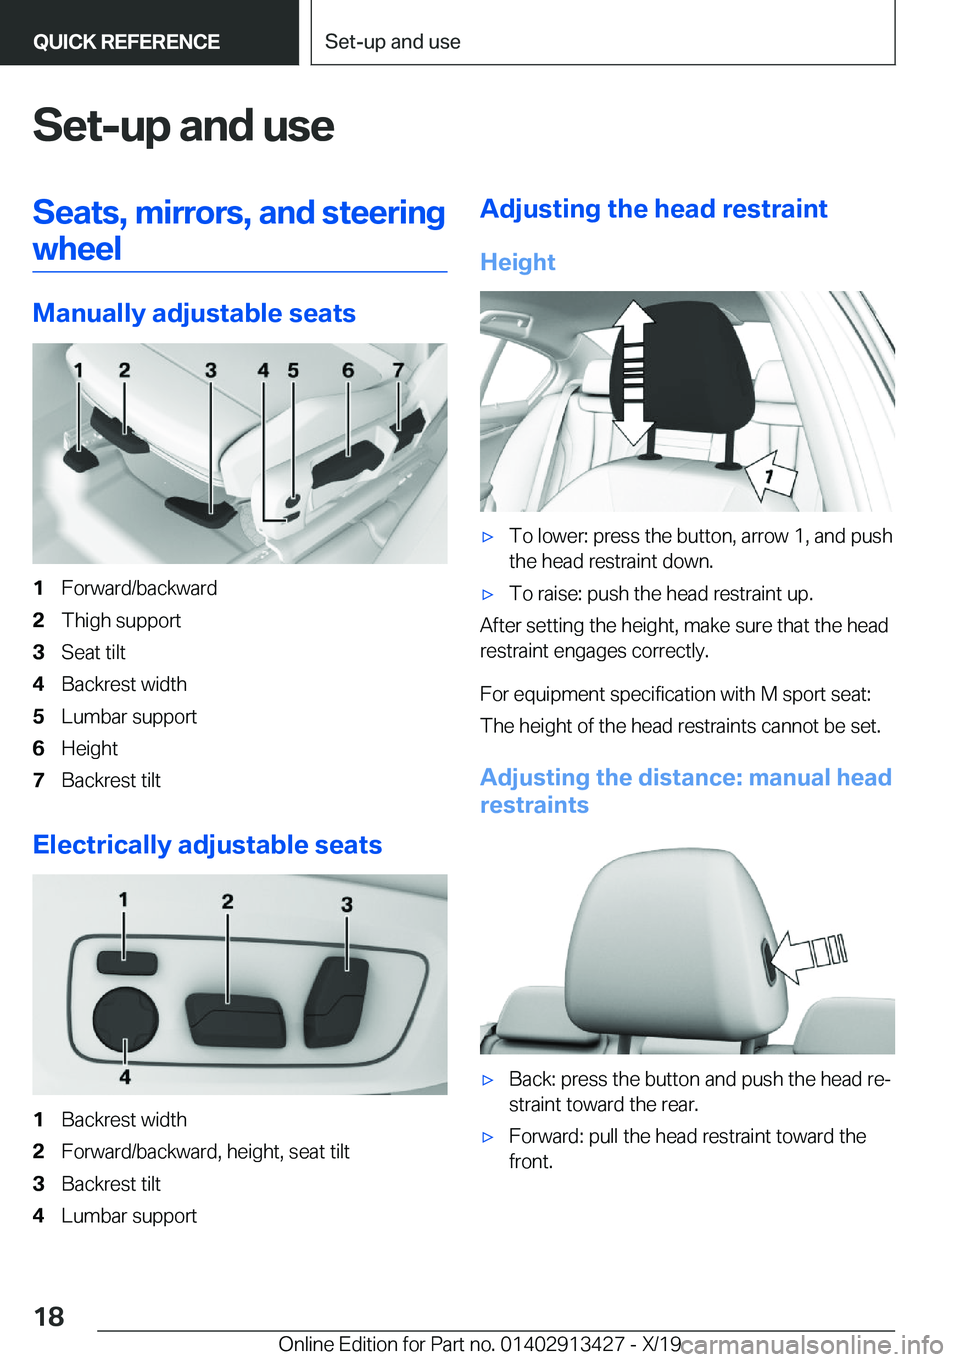 BMW 3 SERIES 2020 User Guide �S�e�t�-�u�p��a�n�d��u�s�e�S�e�a�t�s�,��m�i�r�r�o�r�s�,��a�n�d��s�t�e�e�r�i�n�g�w�h�e�e�l
�M�a�n�u�a�l�l�y��a�d�j�u�s�t�a�b�l�e��s�e�a�t�s
�1�F�o�r�w�a�r�d�/�b�a�c�k�w�a�r�d�2�T�h�i�g�h��s�u�p